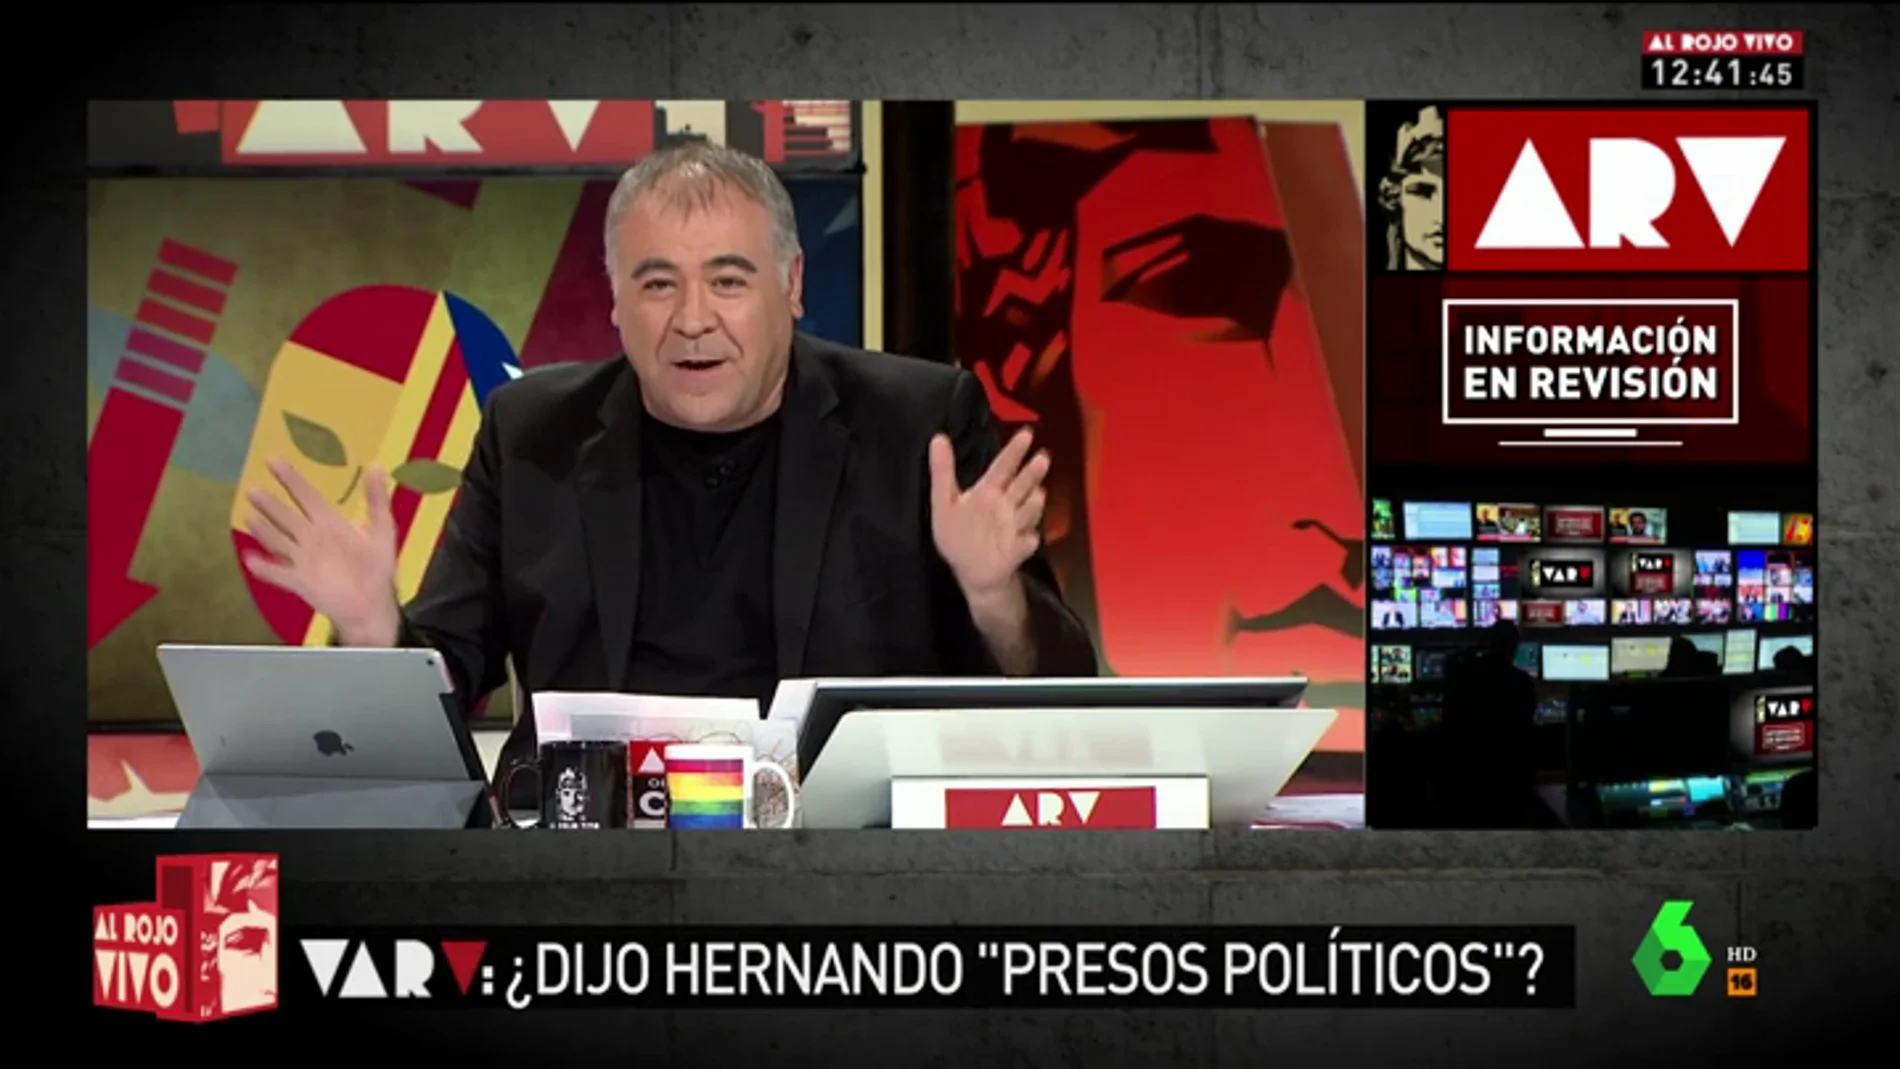 Ferreras estrena el VAR de Al Rojo Vivo: ¿Se refirió Hernando a los presos catalanes como "presos políticos"?